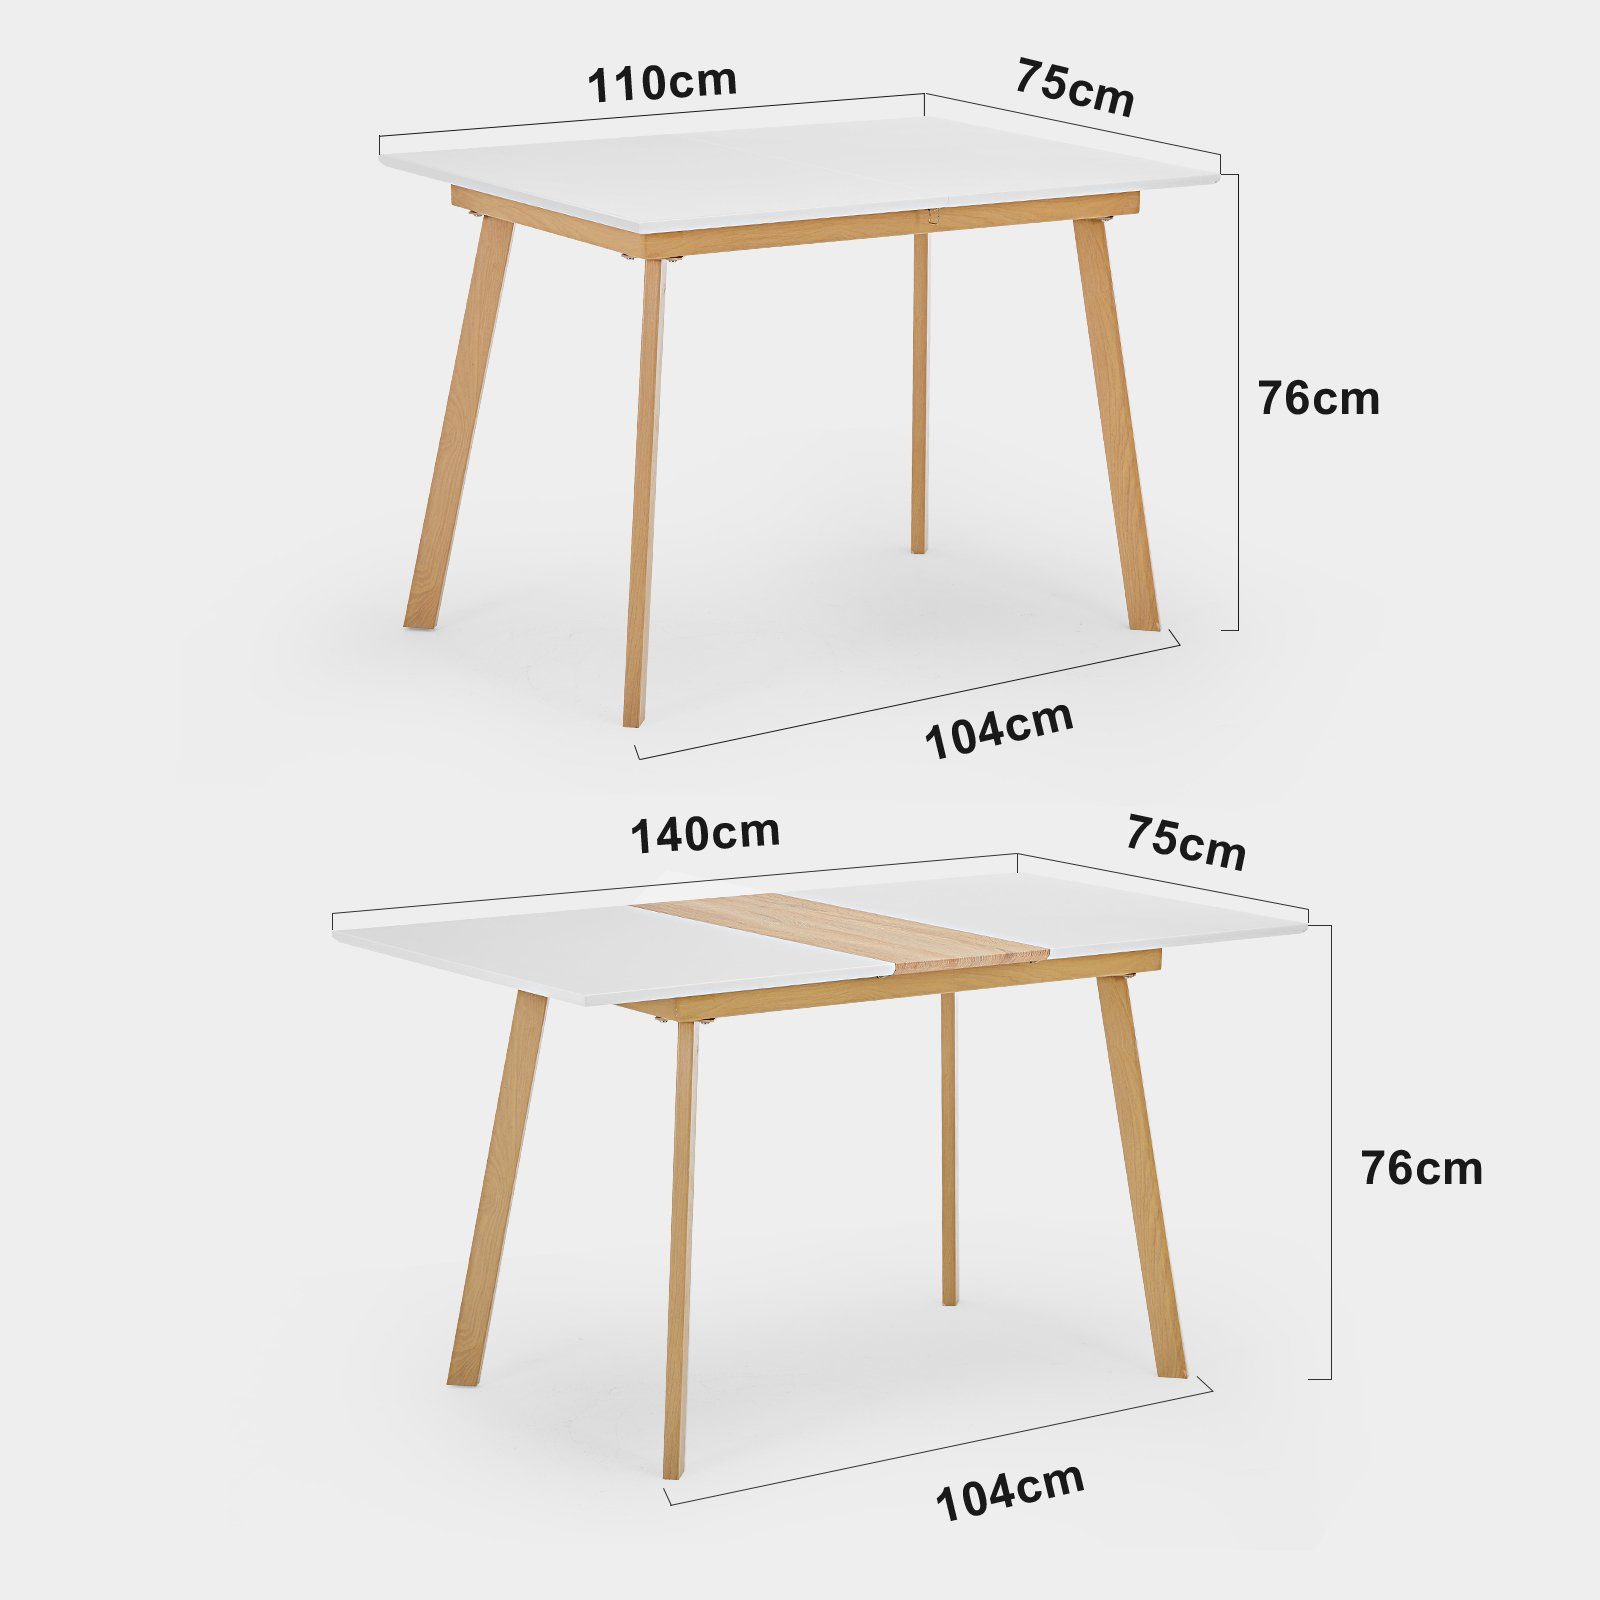 mit - Moderne DOTMALL Esstisch Ausziehbarer mattweiße Tischplatte Esstisch